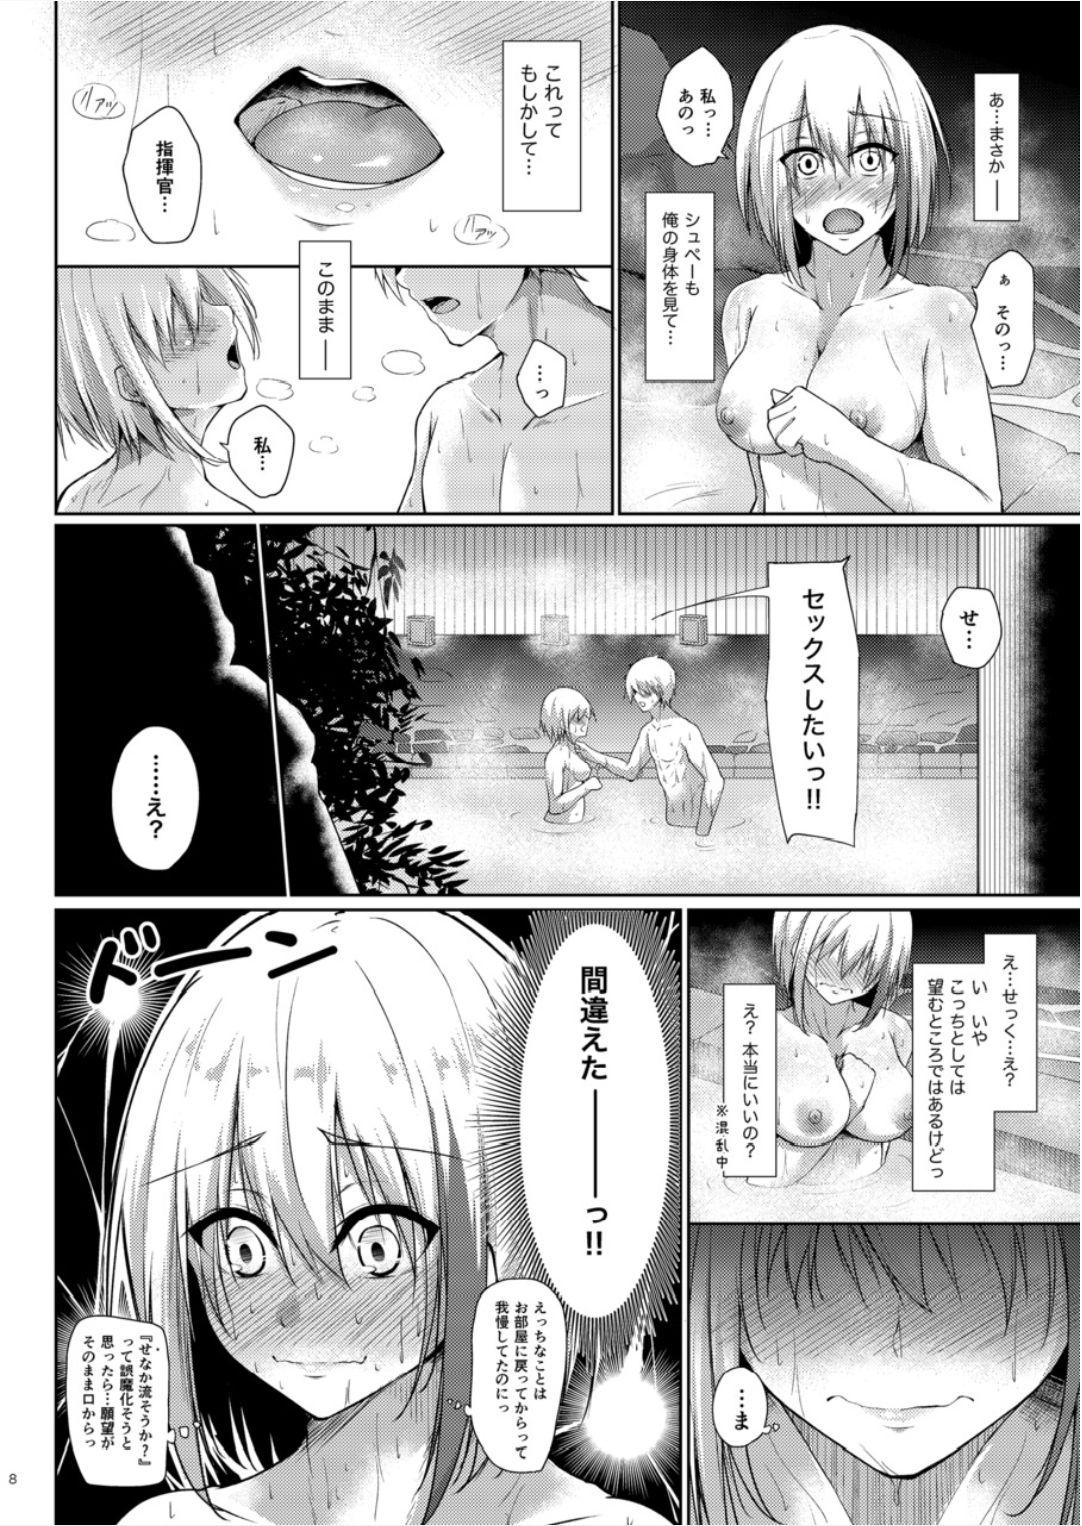 Oral Sex Afureru Kurai, Kimi ga Suki. San - Azur lane Sub - Page 8